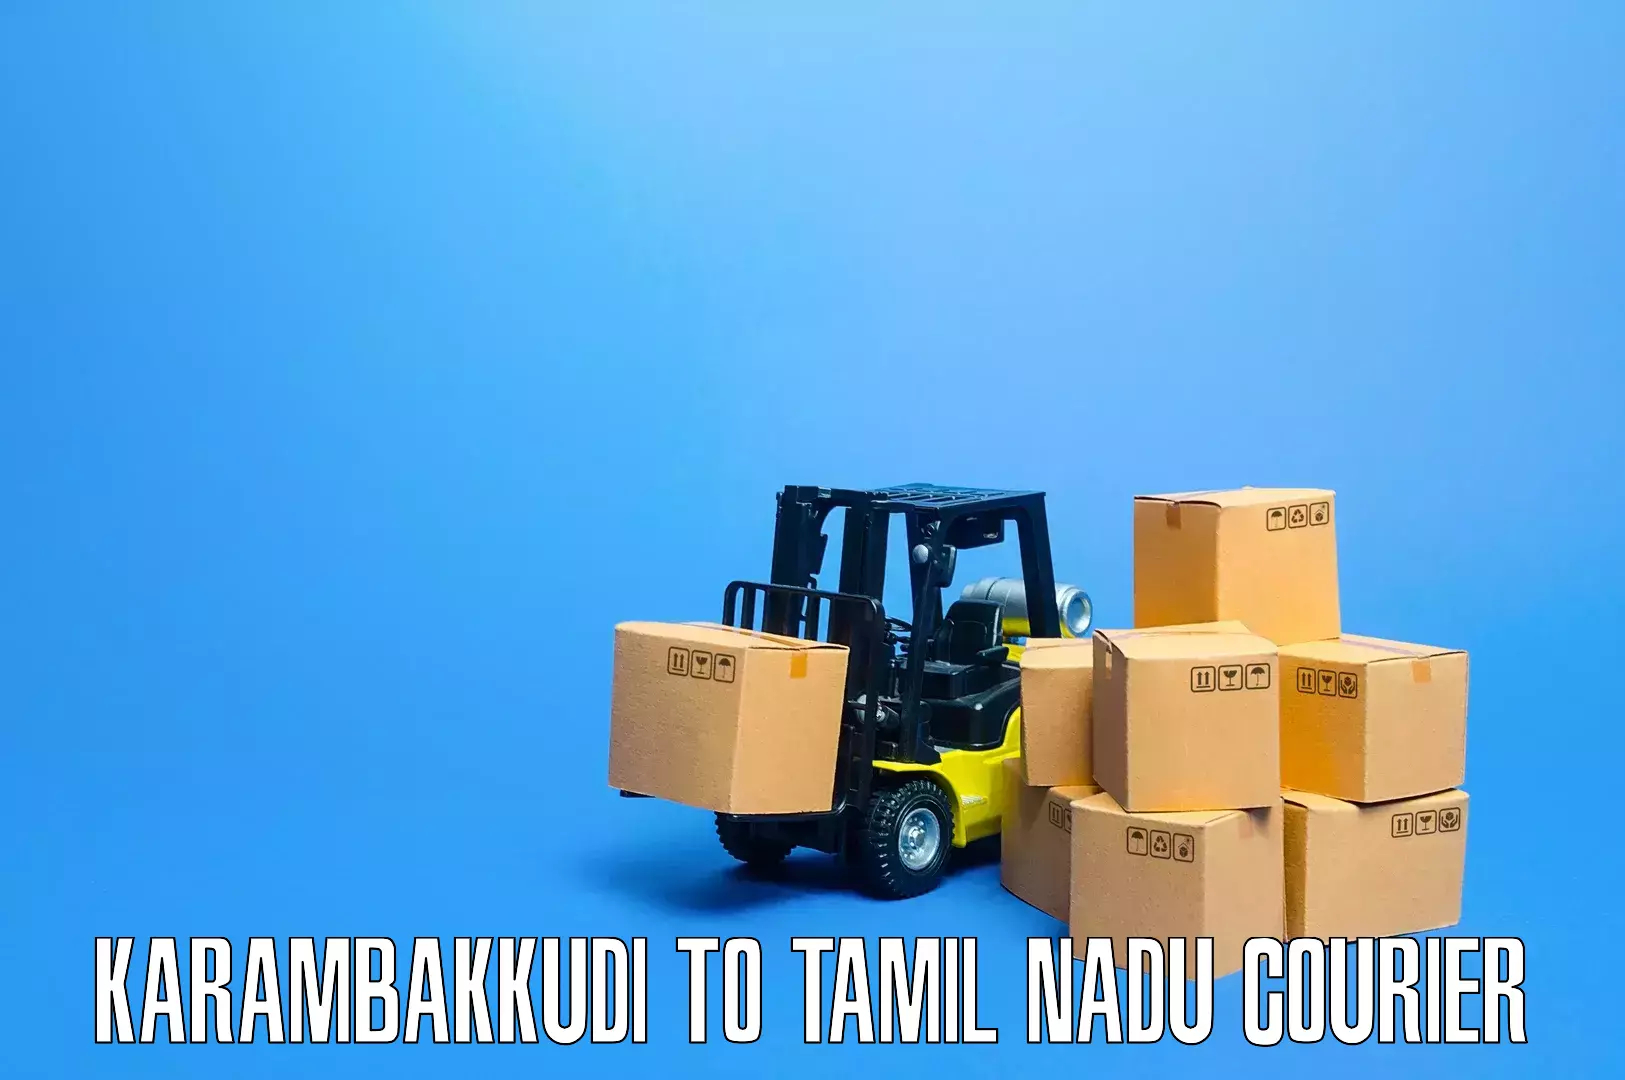 Expert furniture movers Karambakkudi to Ayyampettai